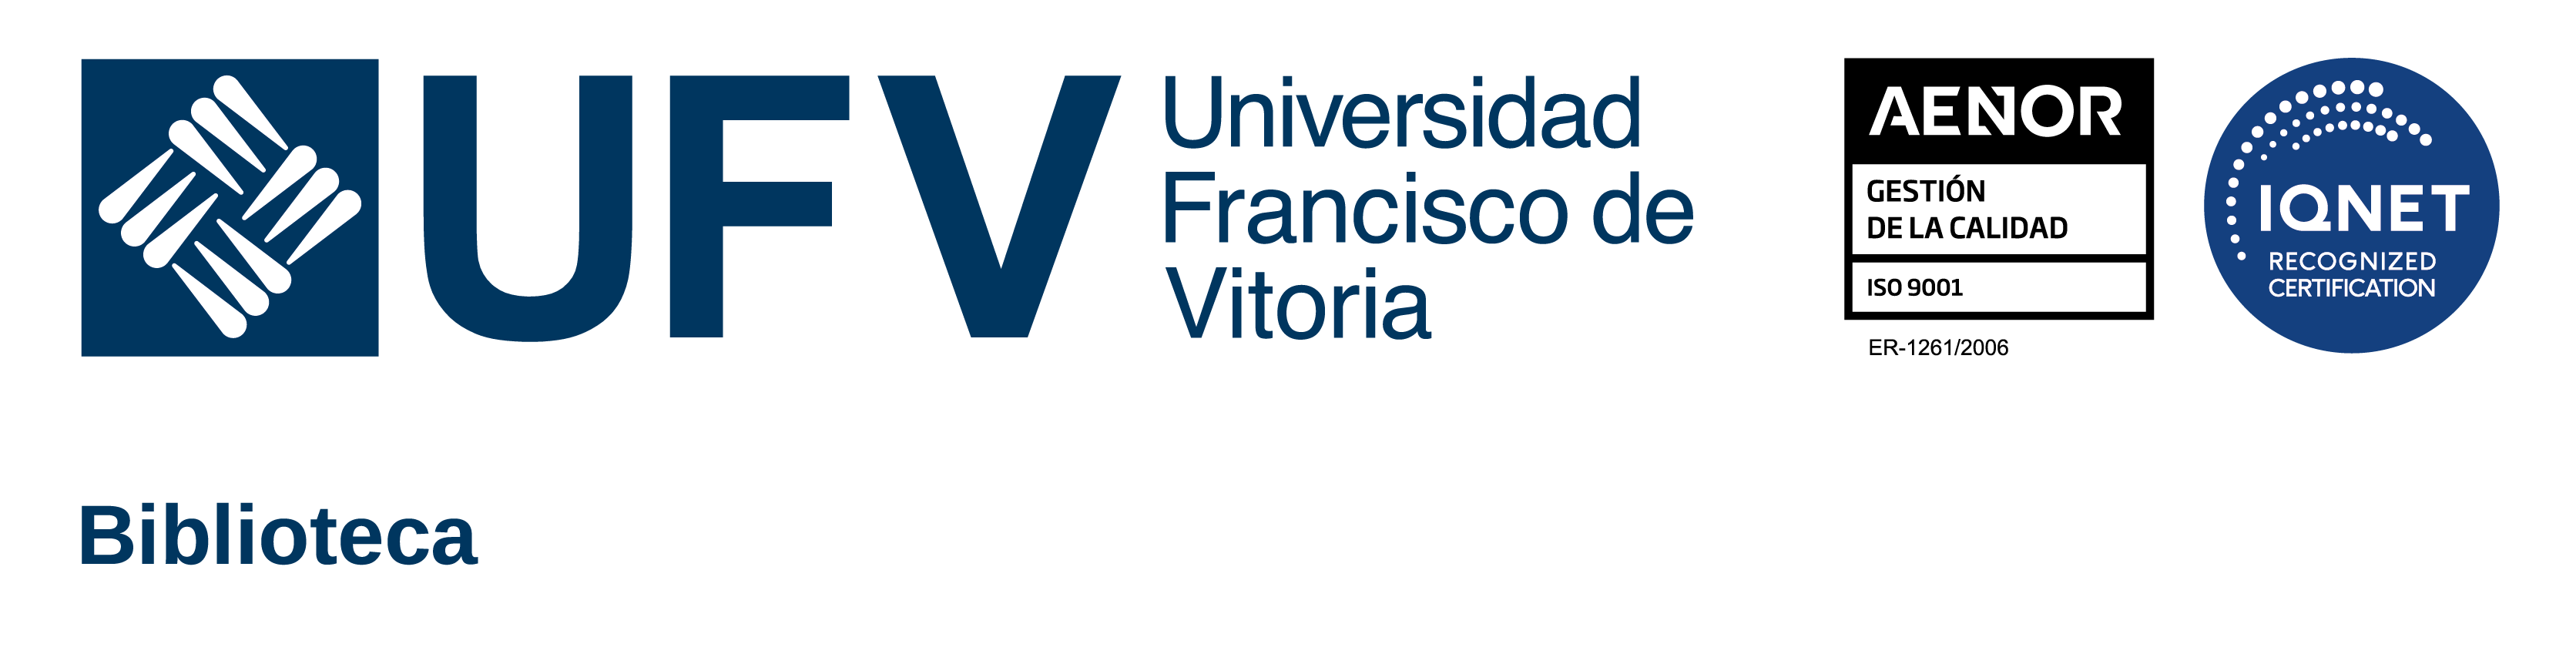 Biblioteca Universidad Francisco de Vitoria